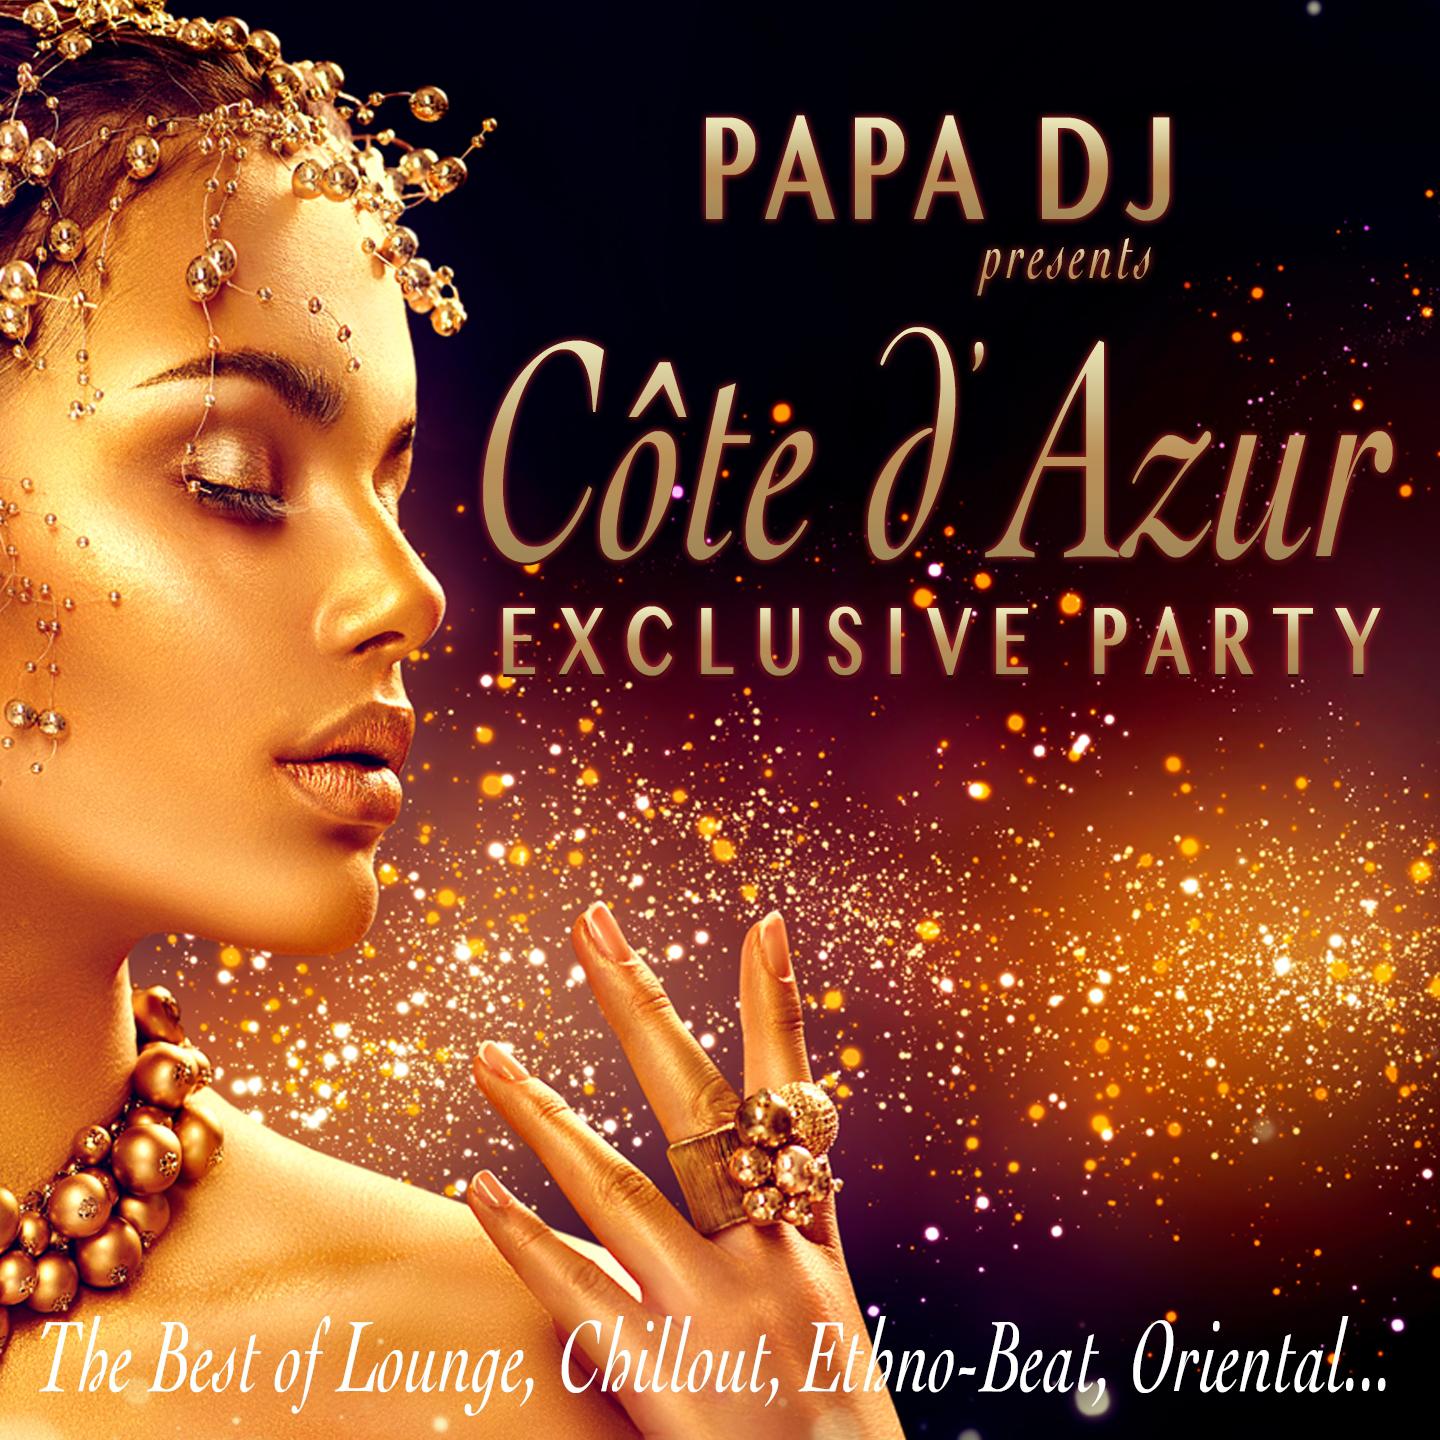 Papa DJ Presents C te D' azur Exclusive Party